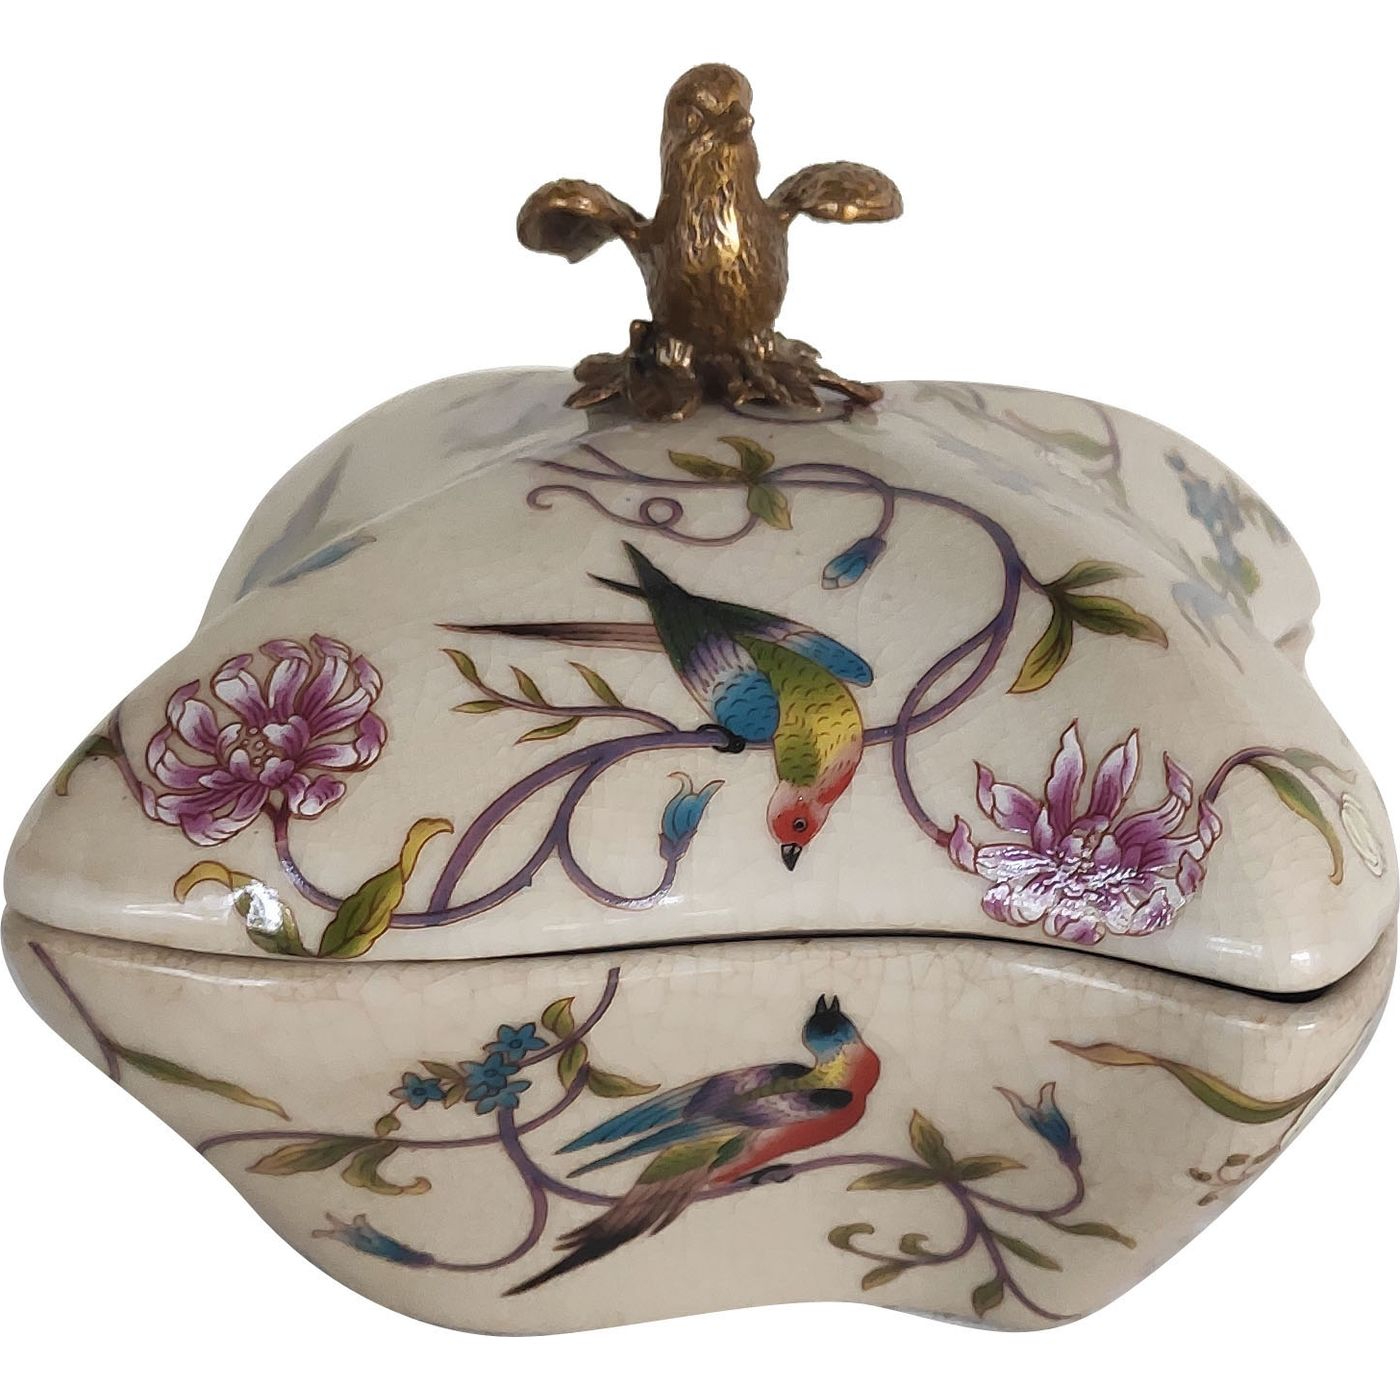 Шкатулка Glasar бежевая с бронзовой птичкой на крышке и цветочным декором 15x15x13 см шкатулка glasar с разно ной птичкой 11x11x10 см